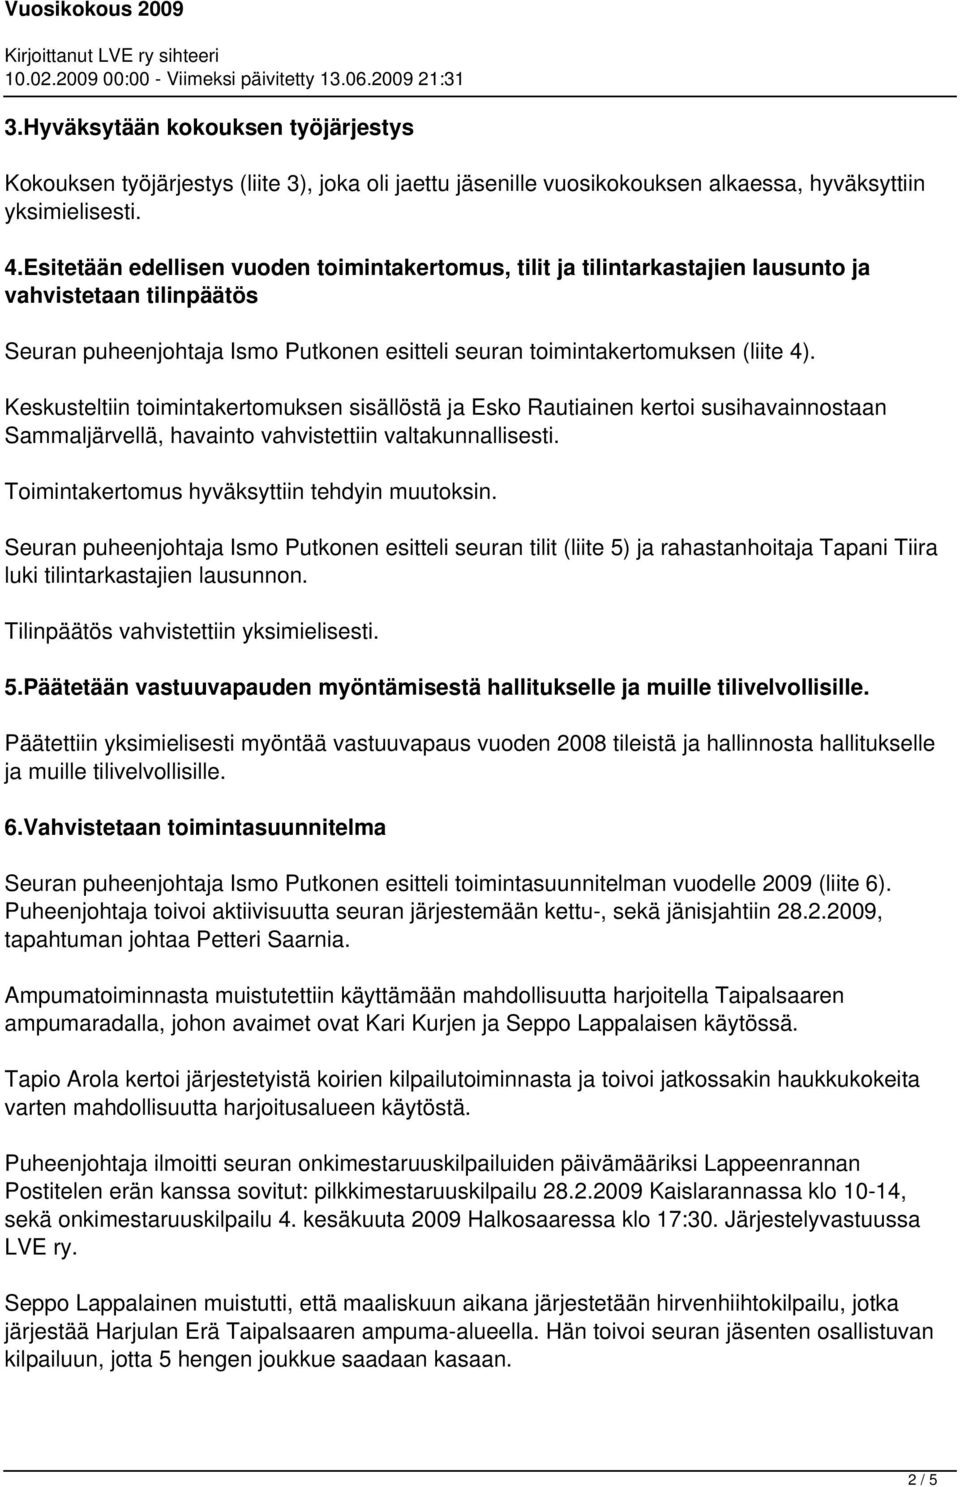 Keskusteltiin toimintakertomuksen sisällöstä ja Esko Rautiainen kertoi susihavainnostaan Sammaljärvellä, havainto vahvistettiin valtakunnallisesti. Toimintakertomus hyväksyttiin tehdyin muutoksin.